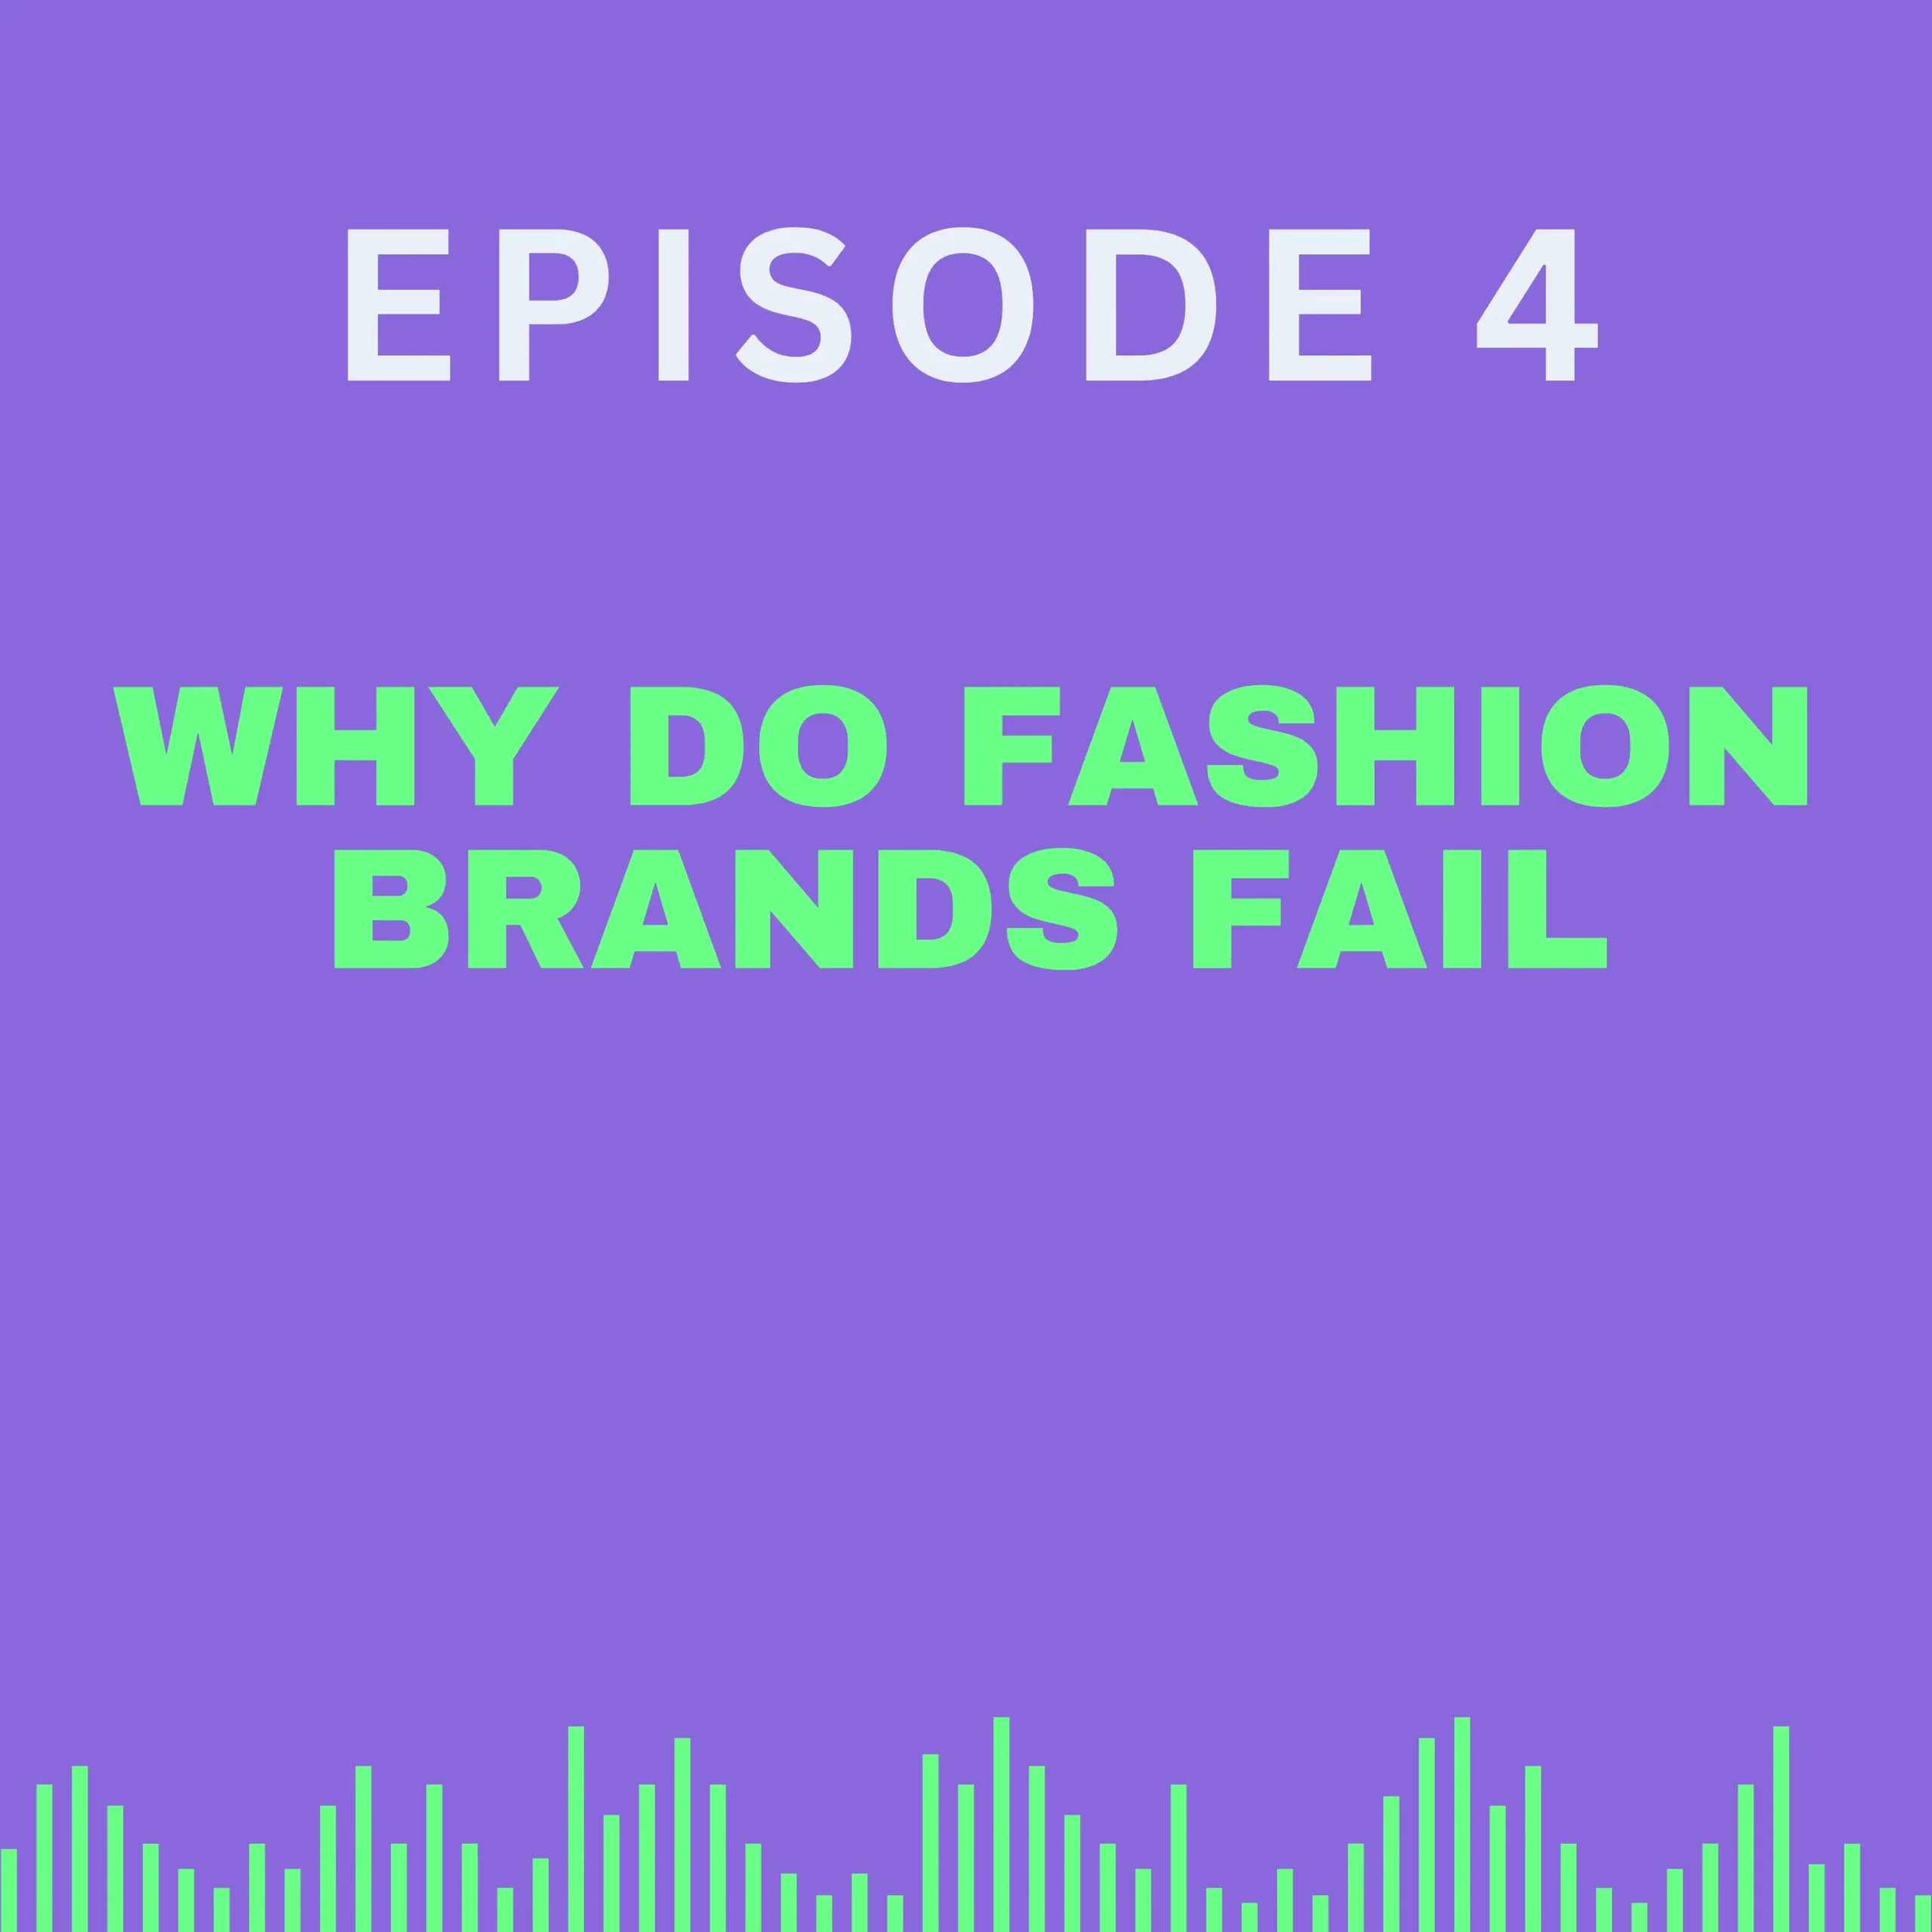 fashion brands fail